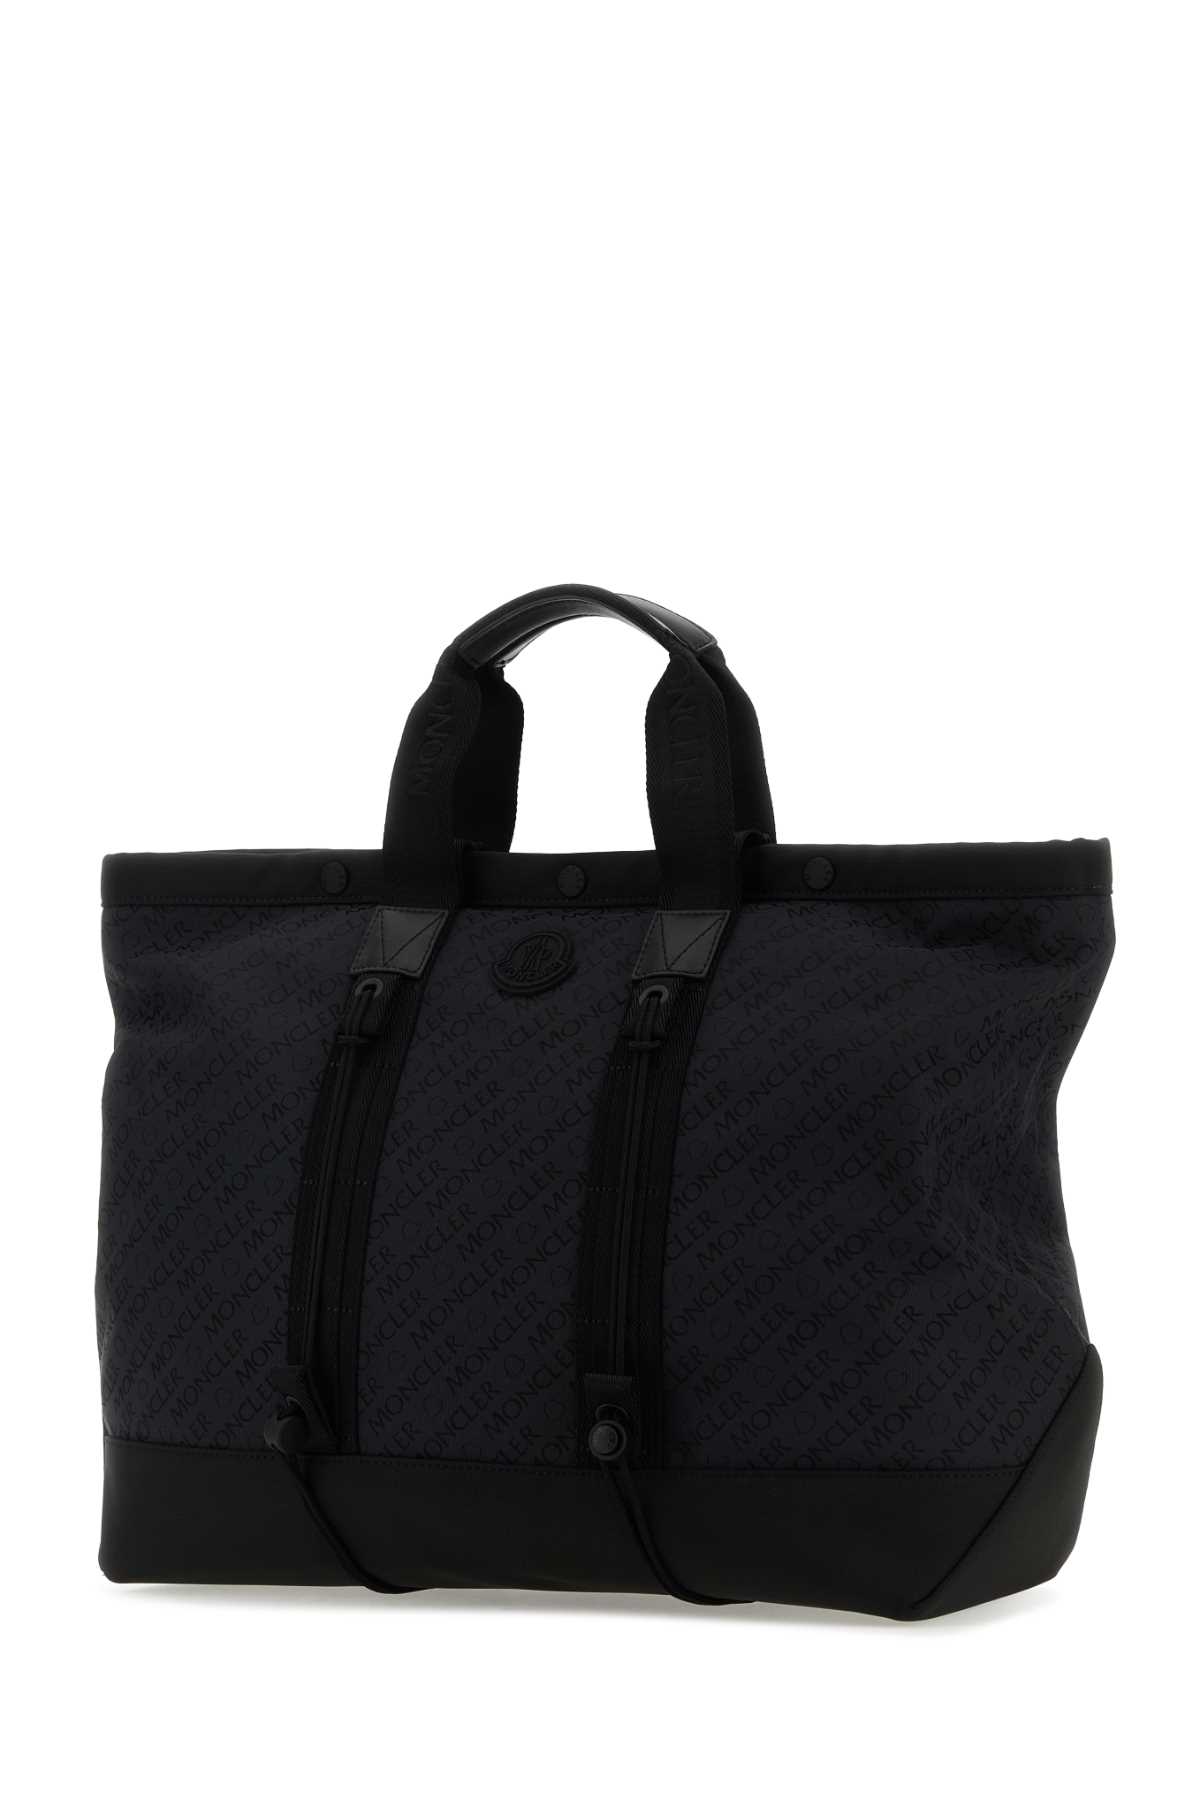 Moncler Black Canvas Tech Shopping Bag In 999